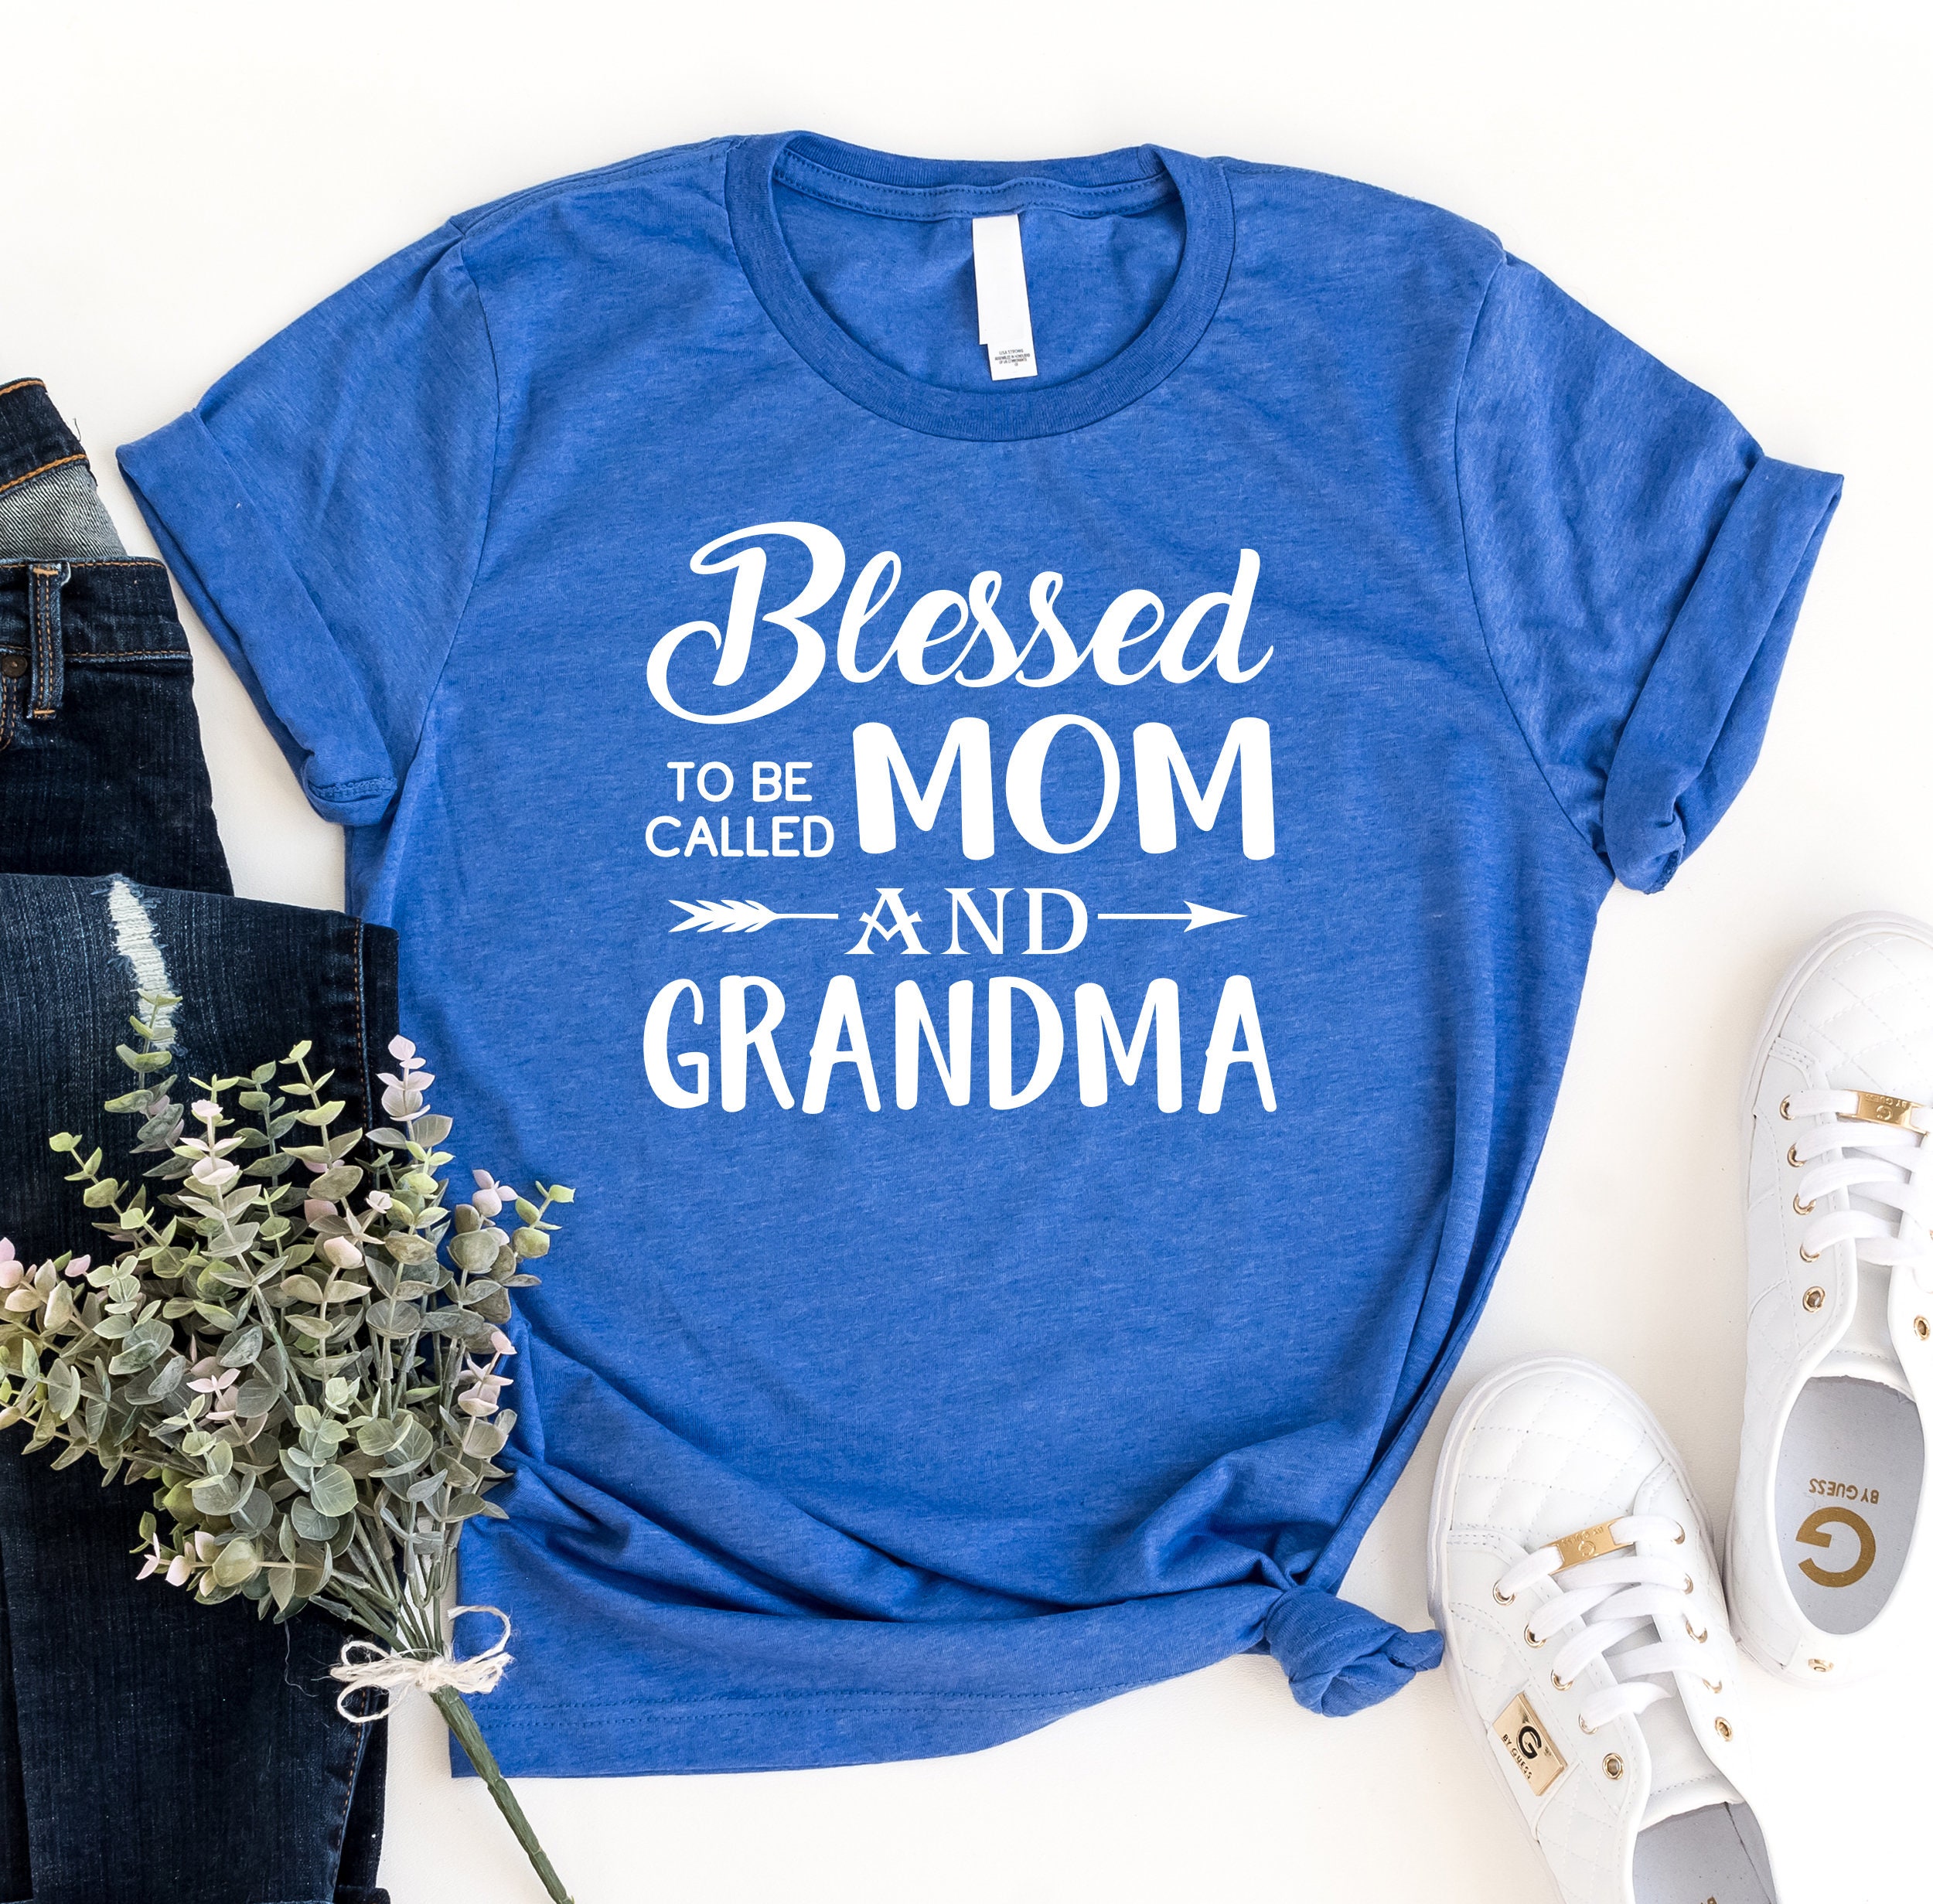 Grandma Shirt Reveal to Grandma New Grandma Shirt Blessed | Etsy